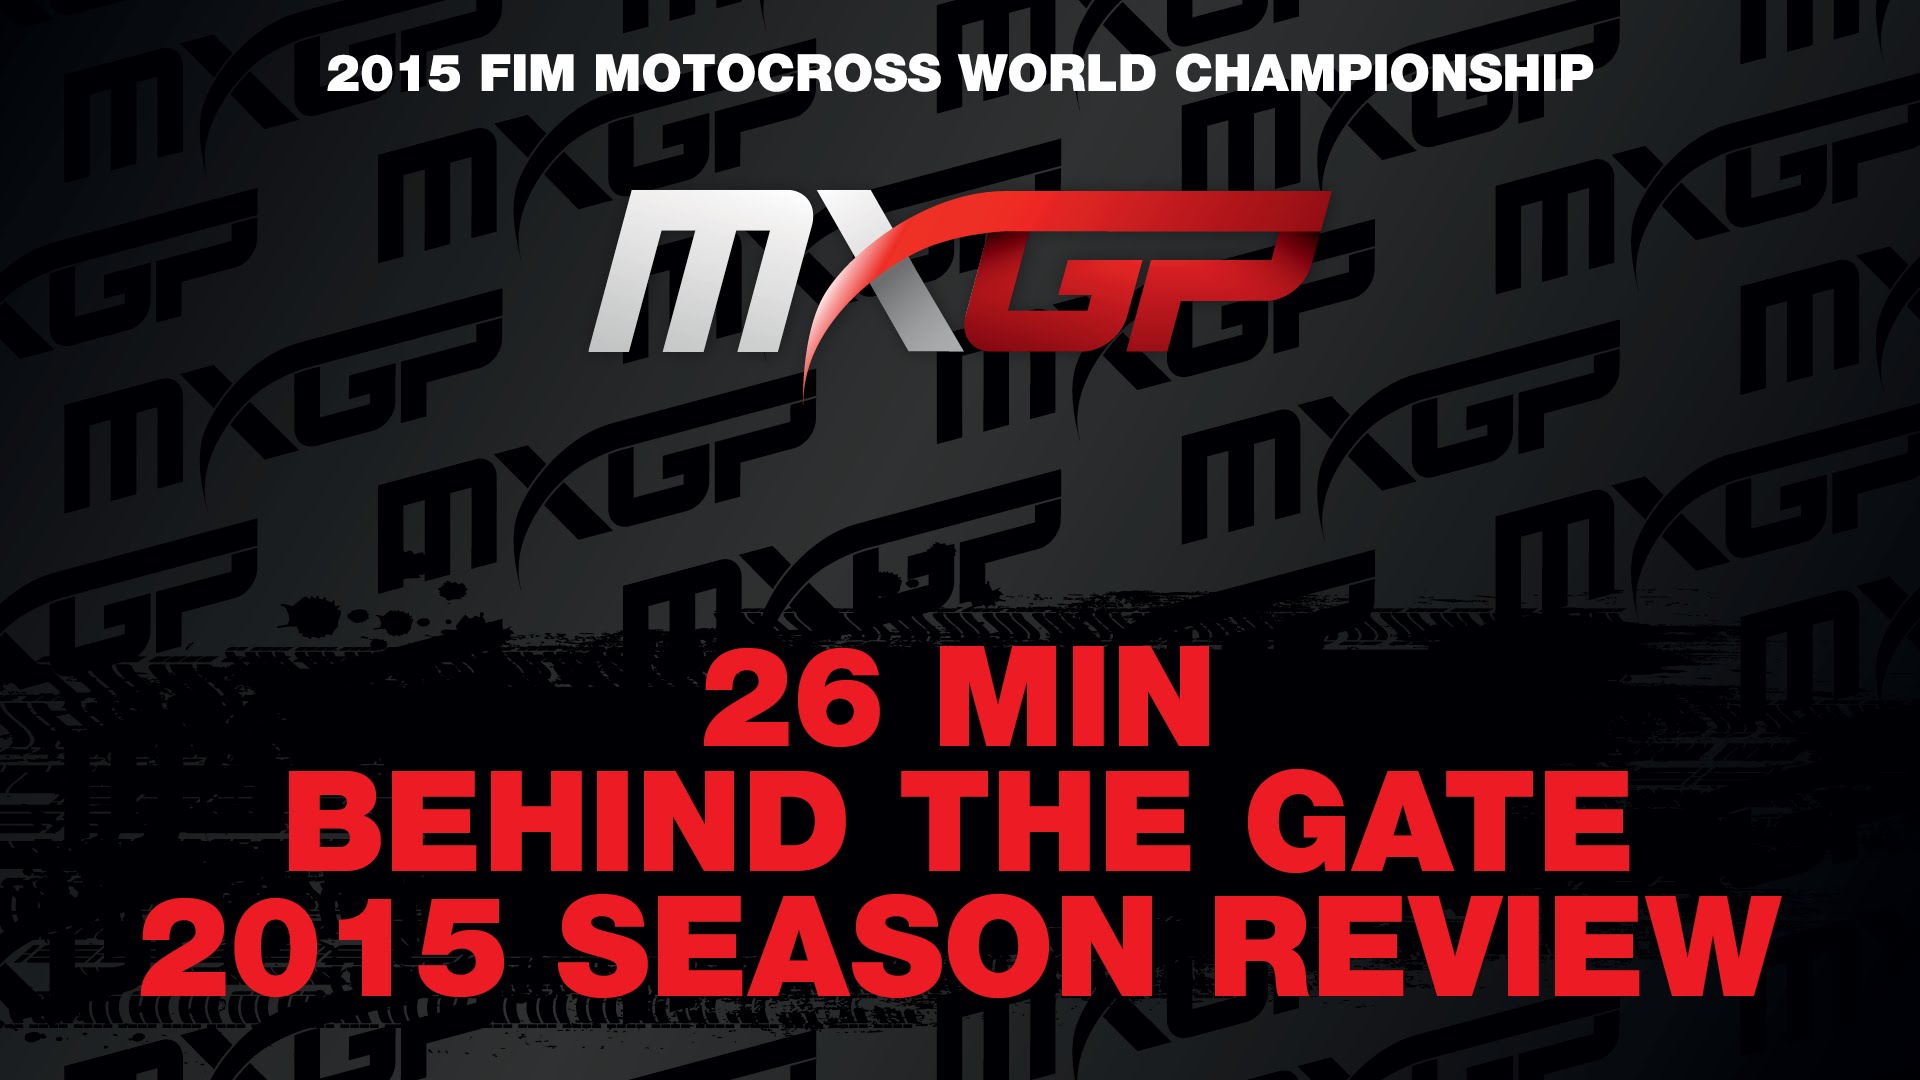 VIDEOS: Resumen de la temporada 2015 del Mundial de Motocross